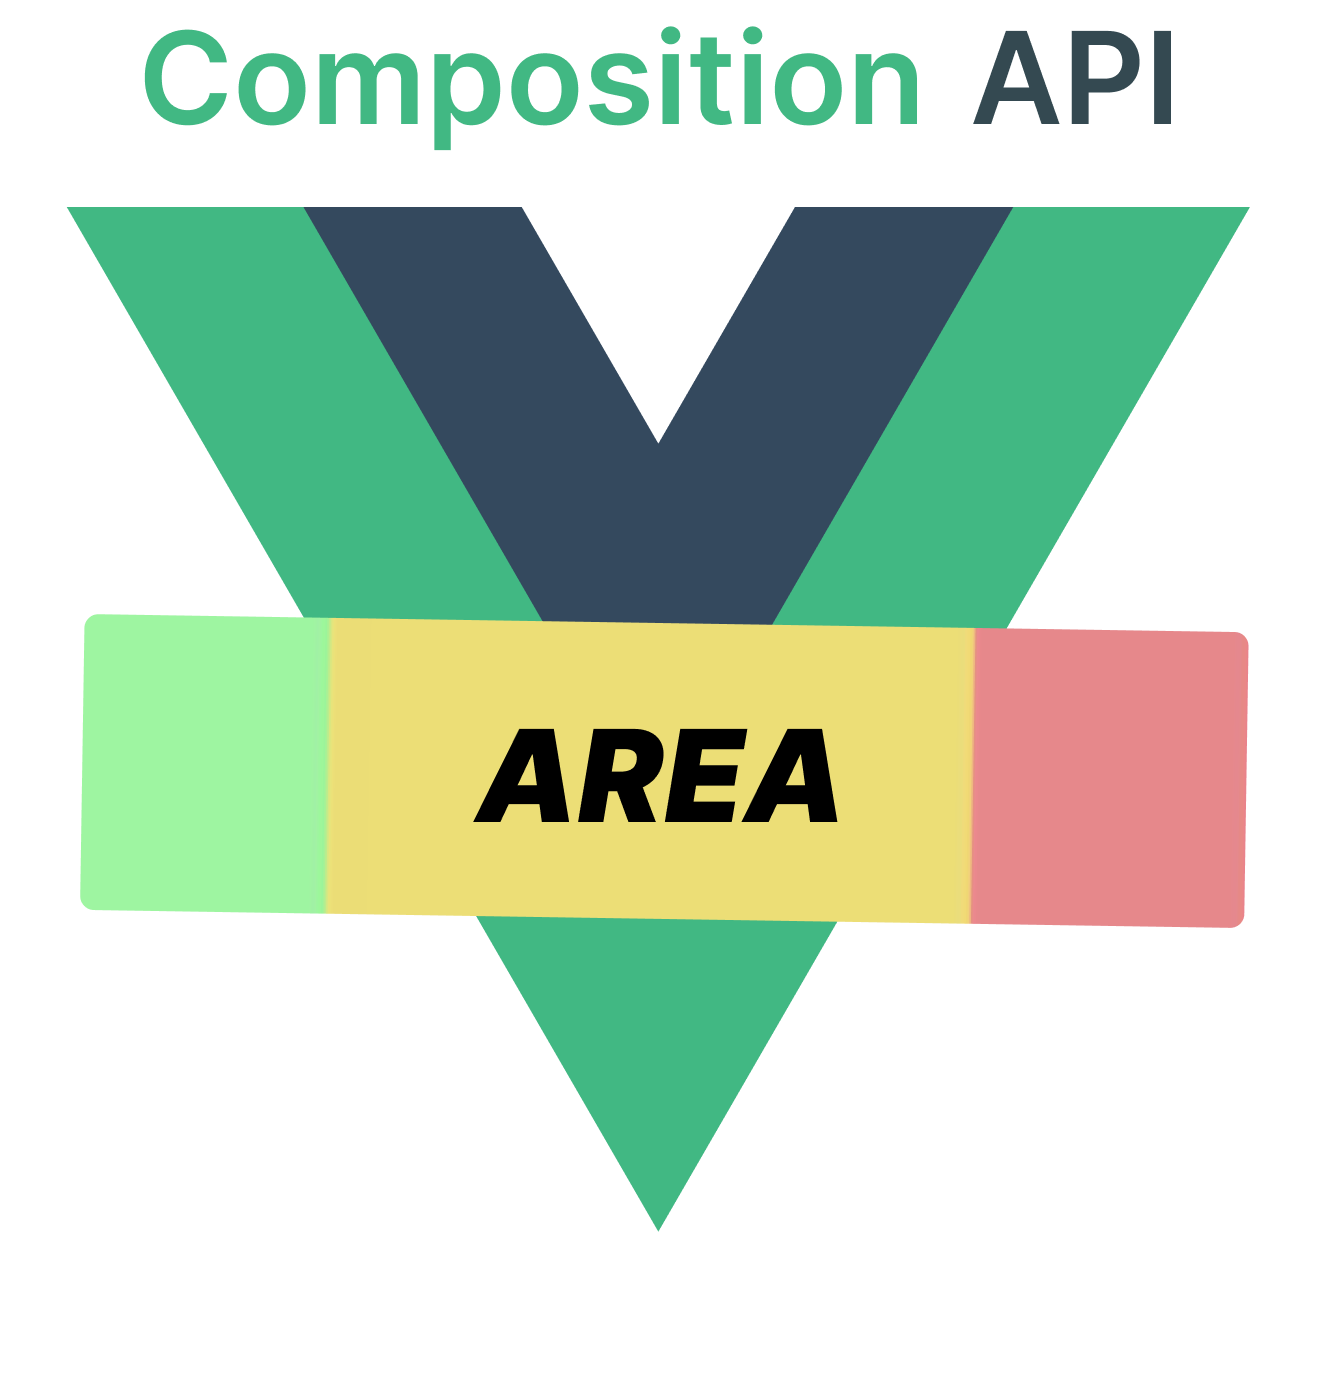 vue-sfc-composition-area